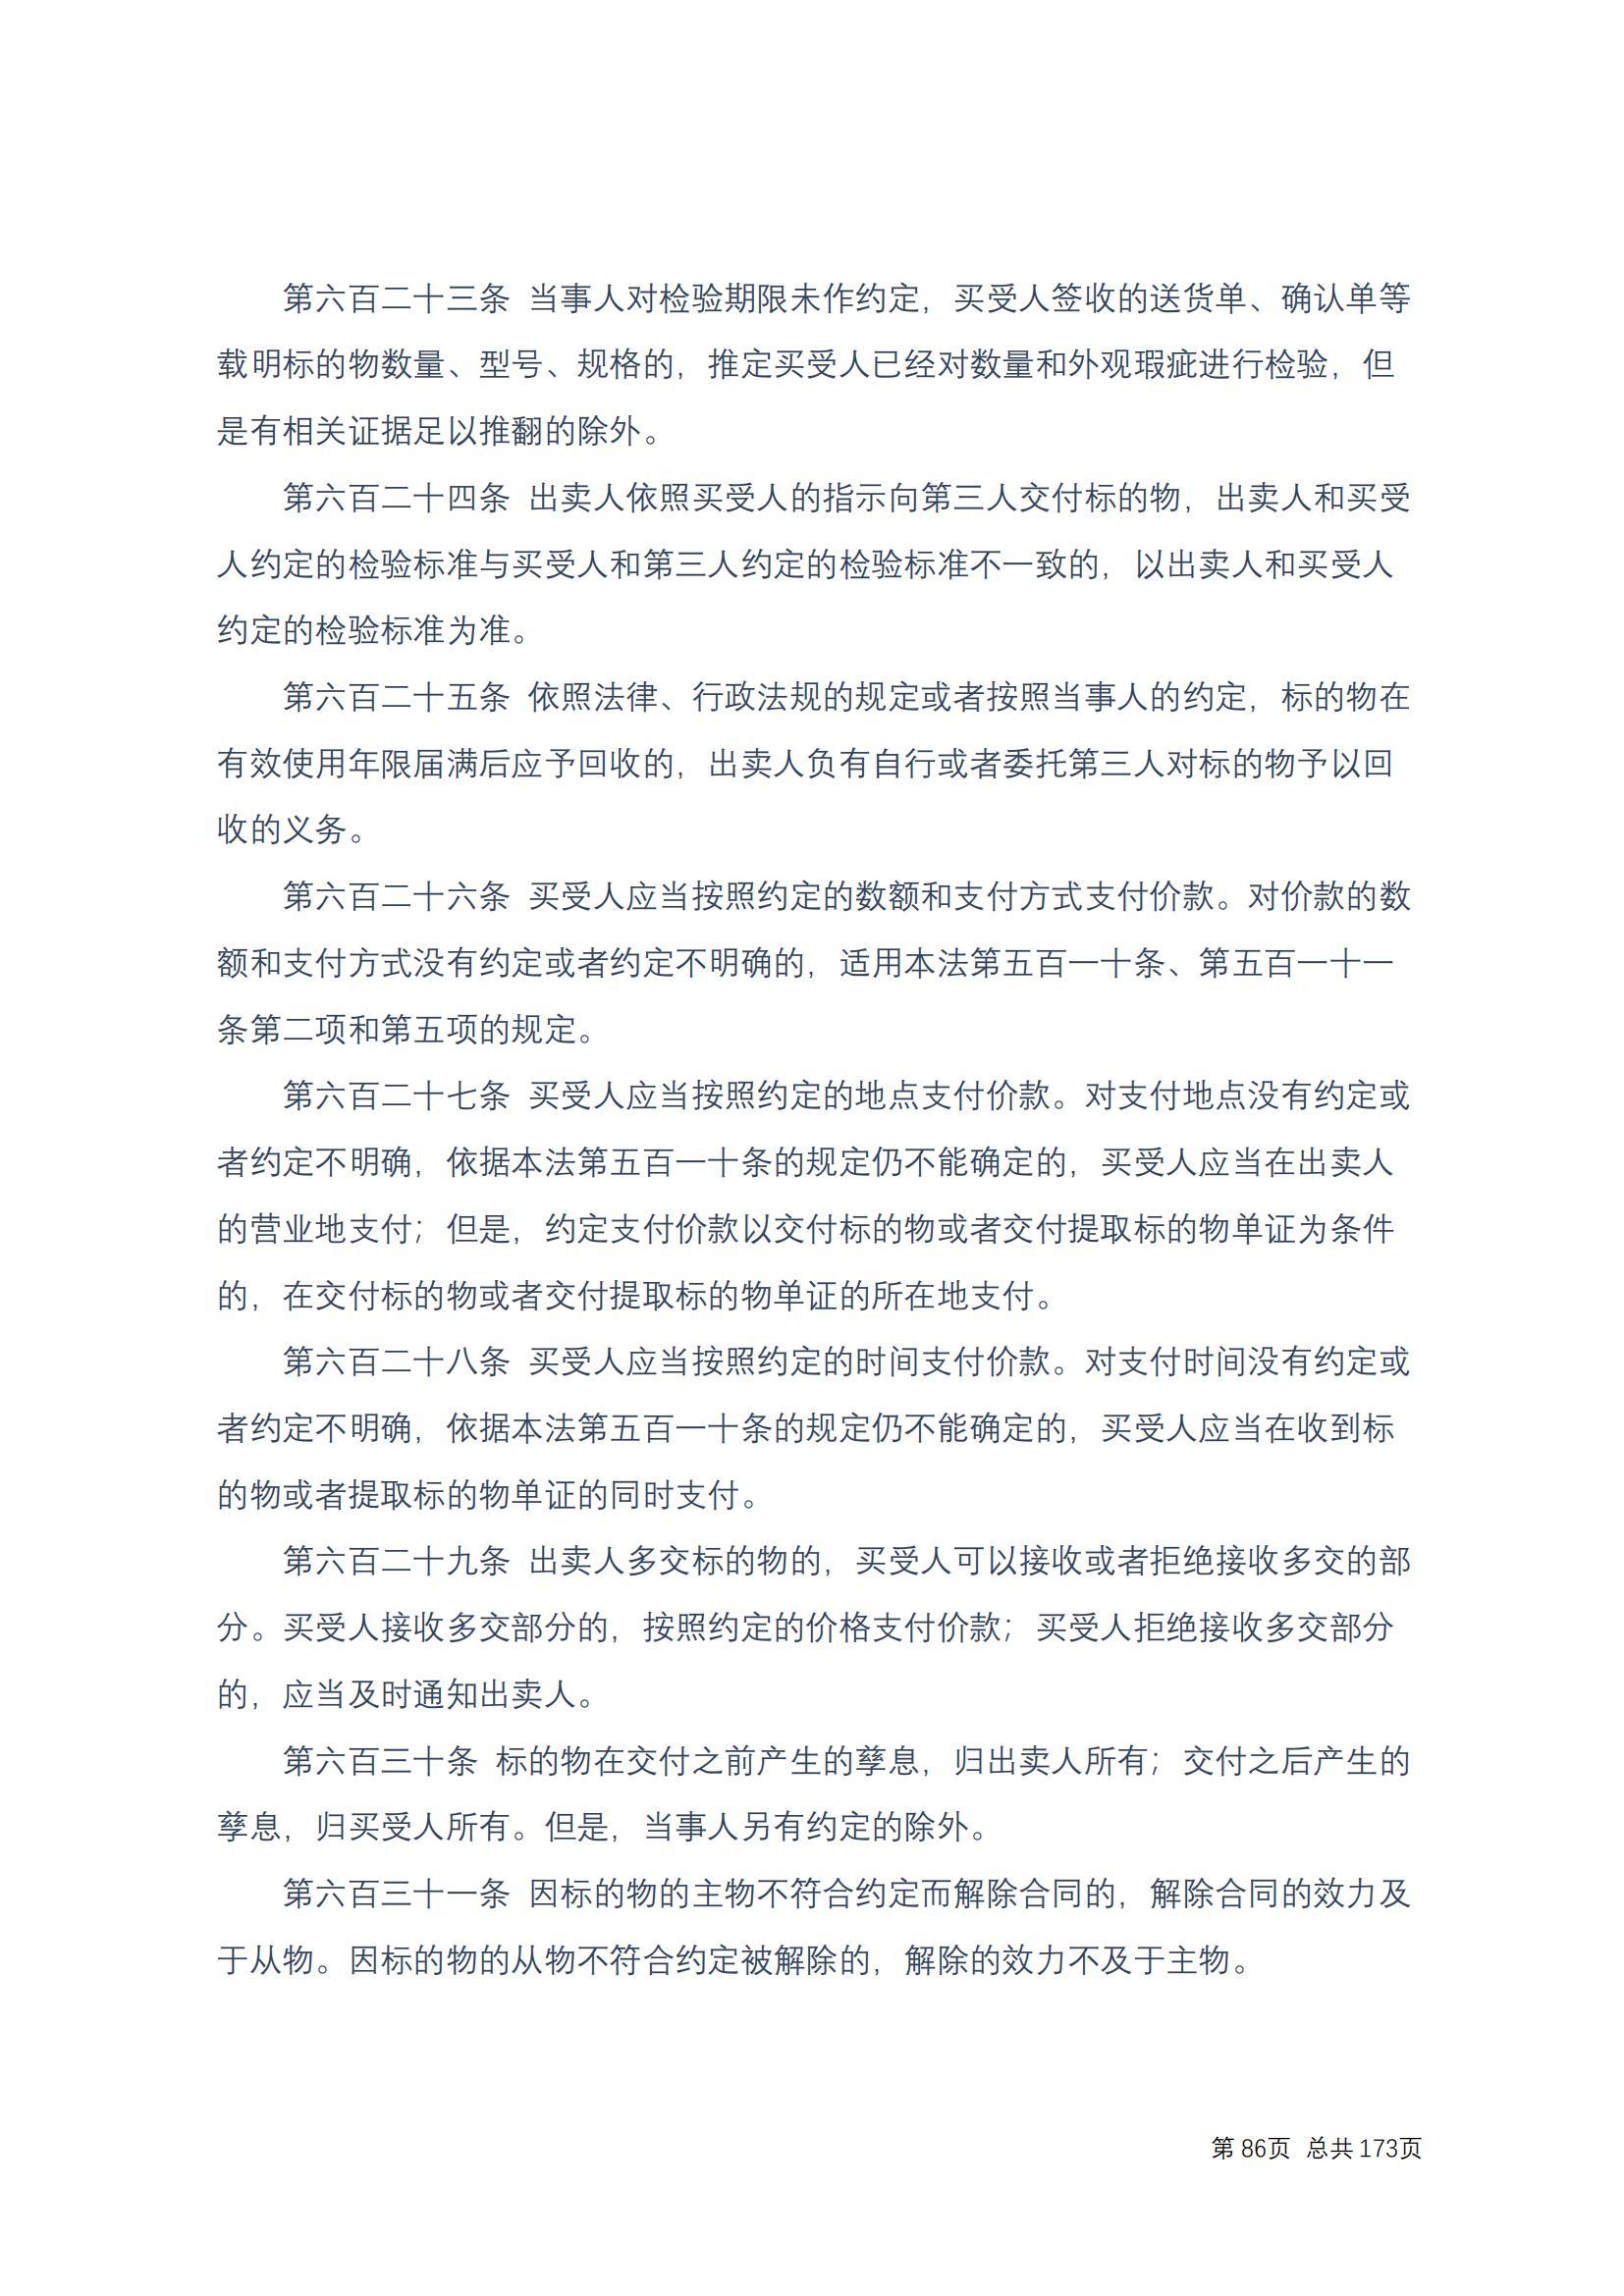 中华人民共和国民法典 修改过_85